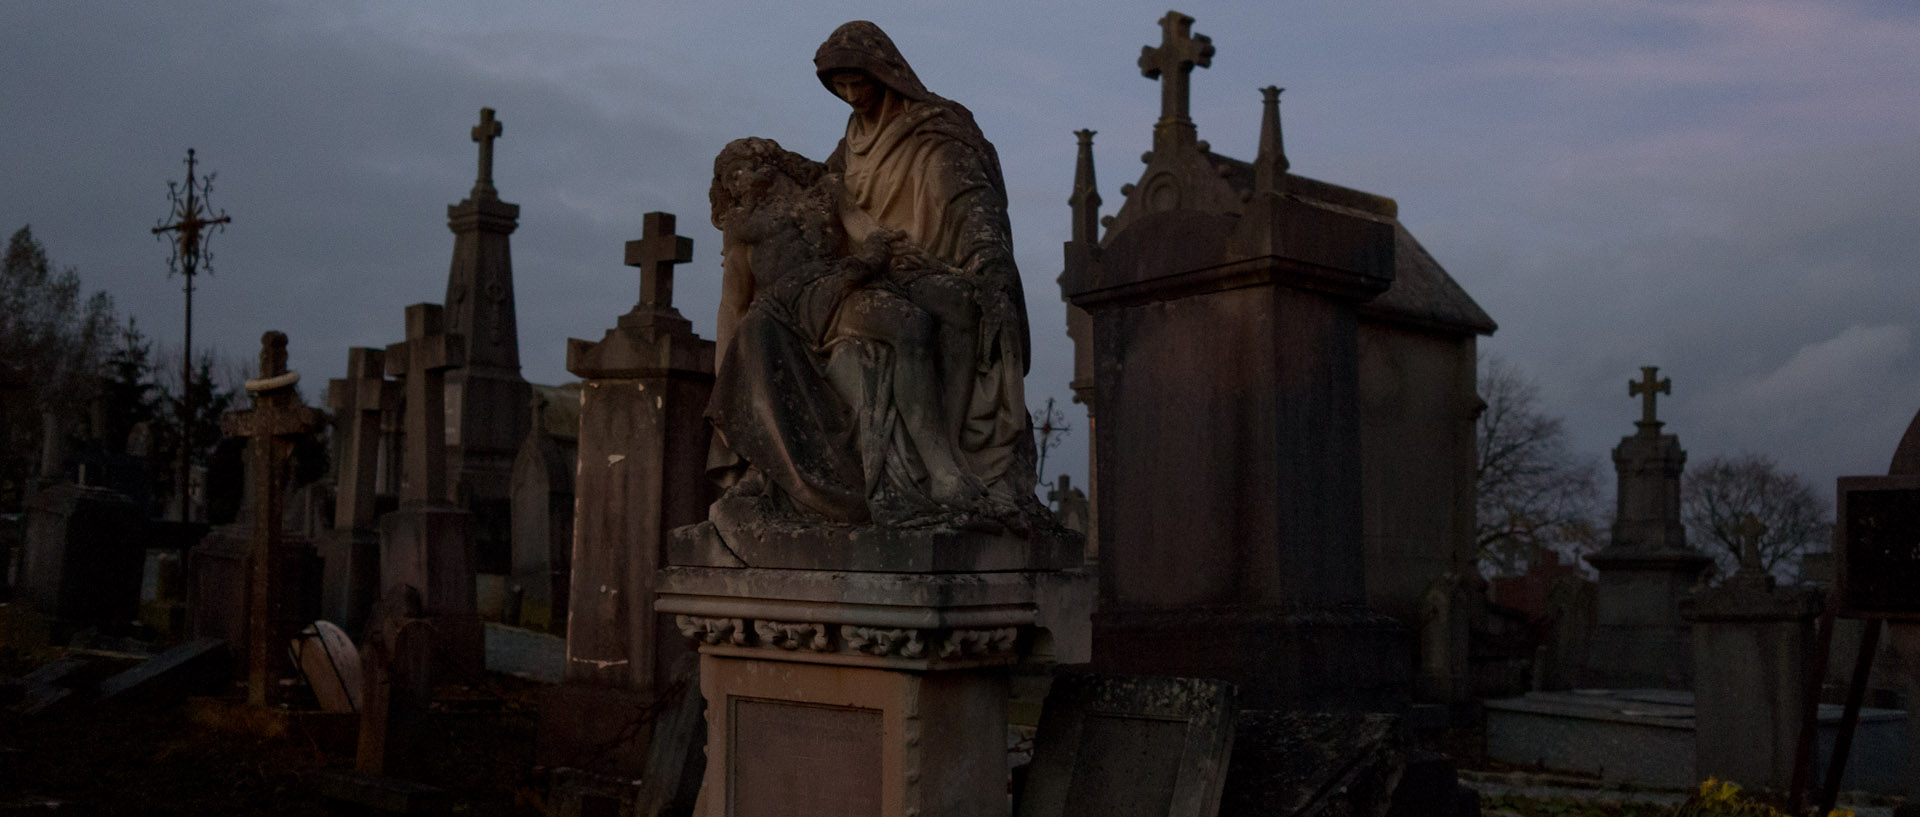 Le cimetière de Cassel à la tombée de la nuit.